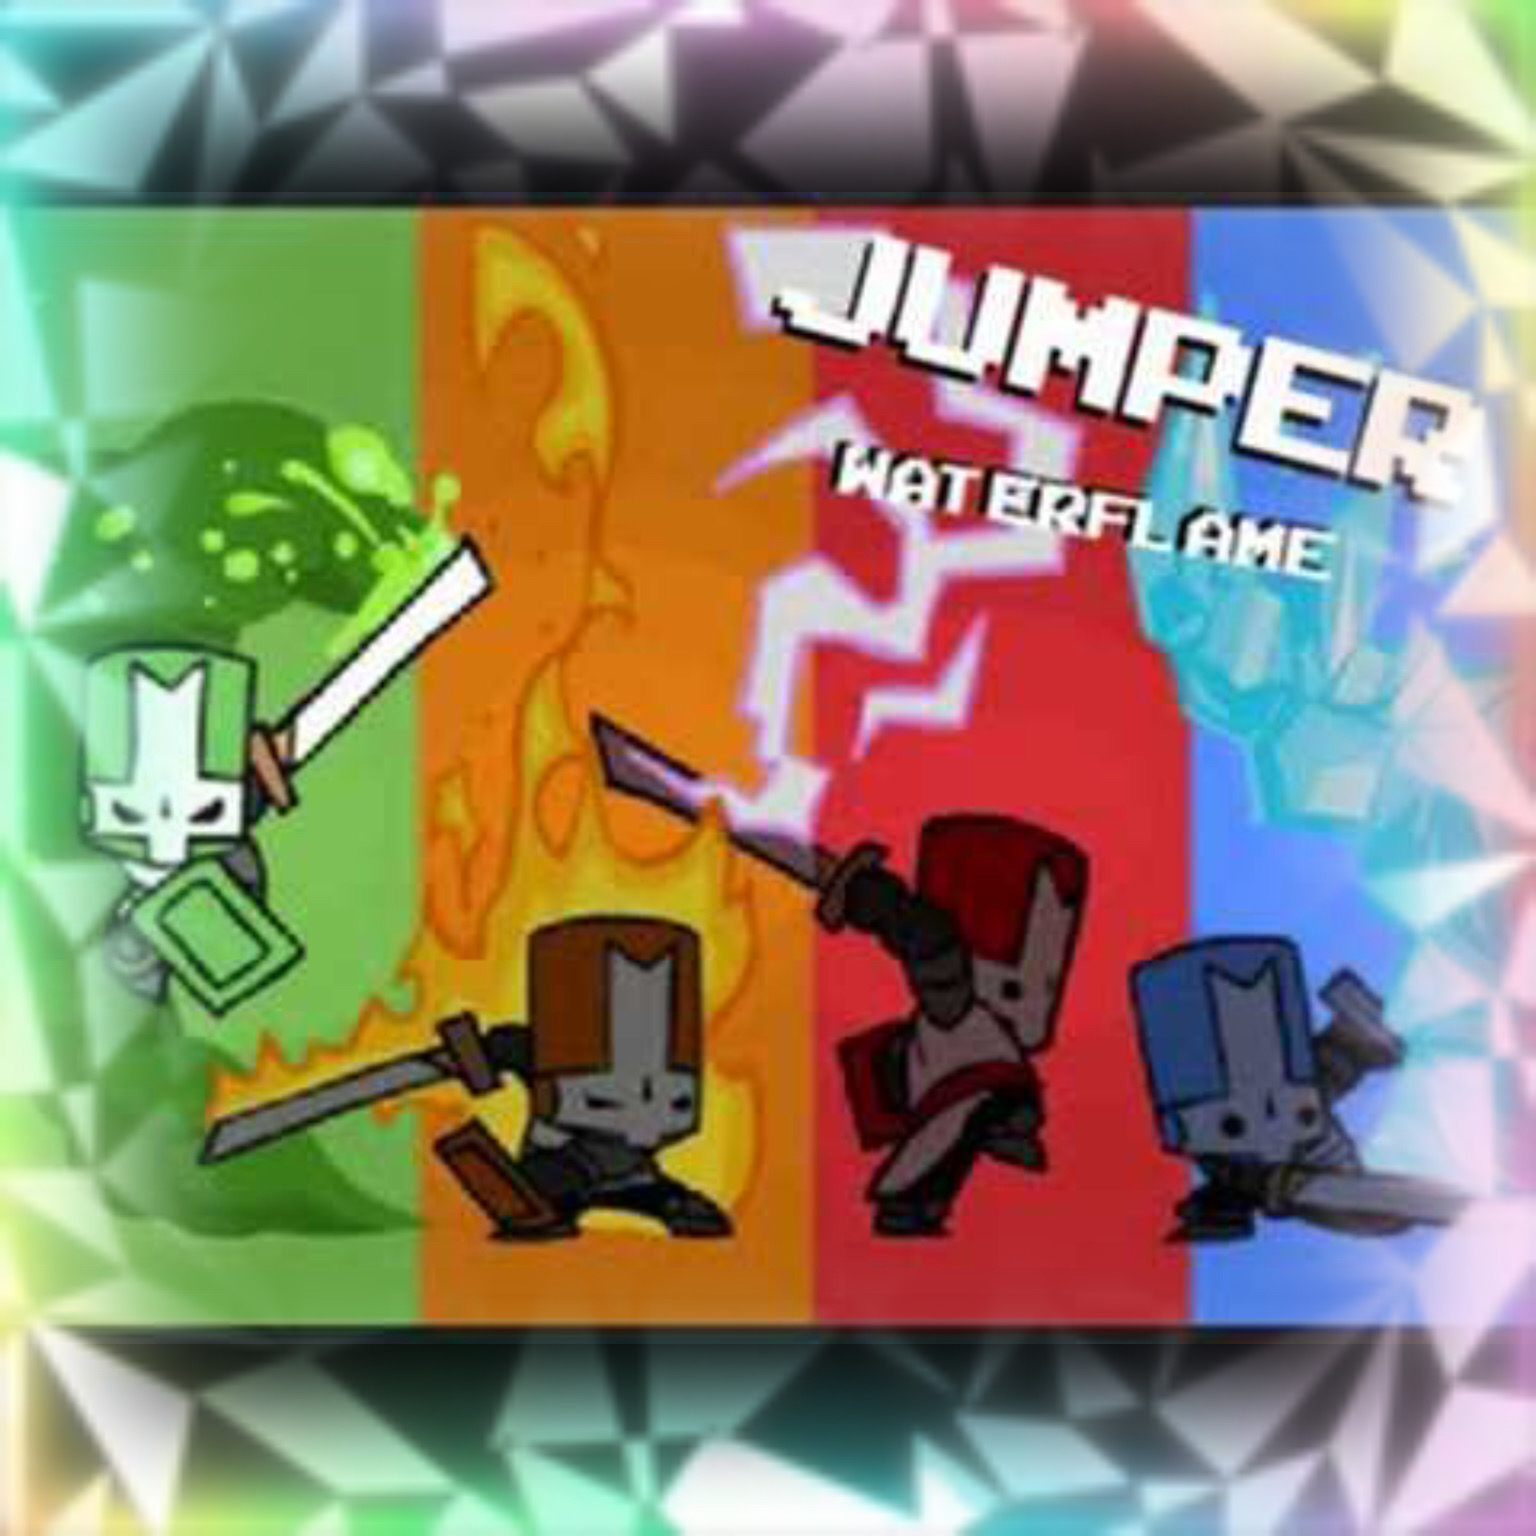 Jumper - Castle Crashers 